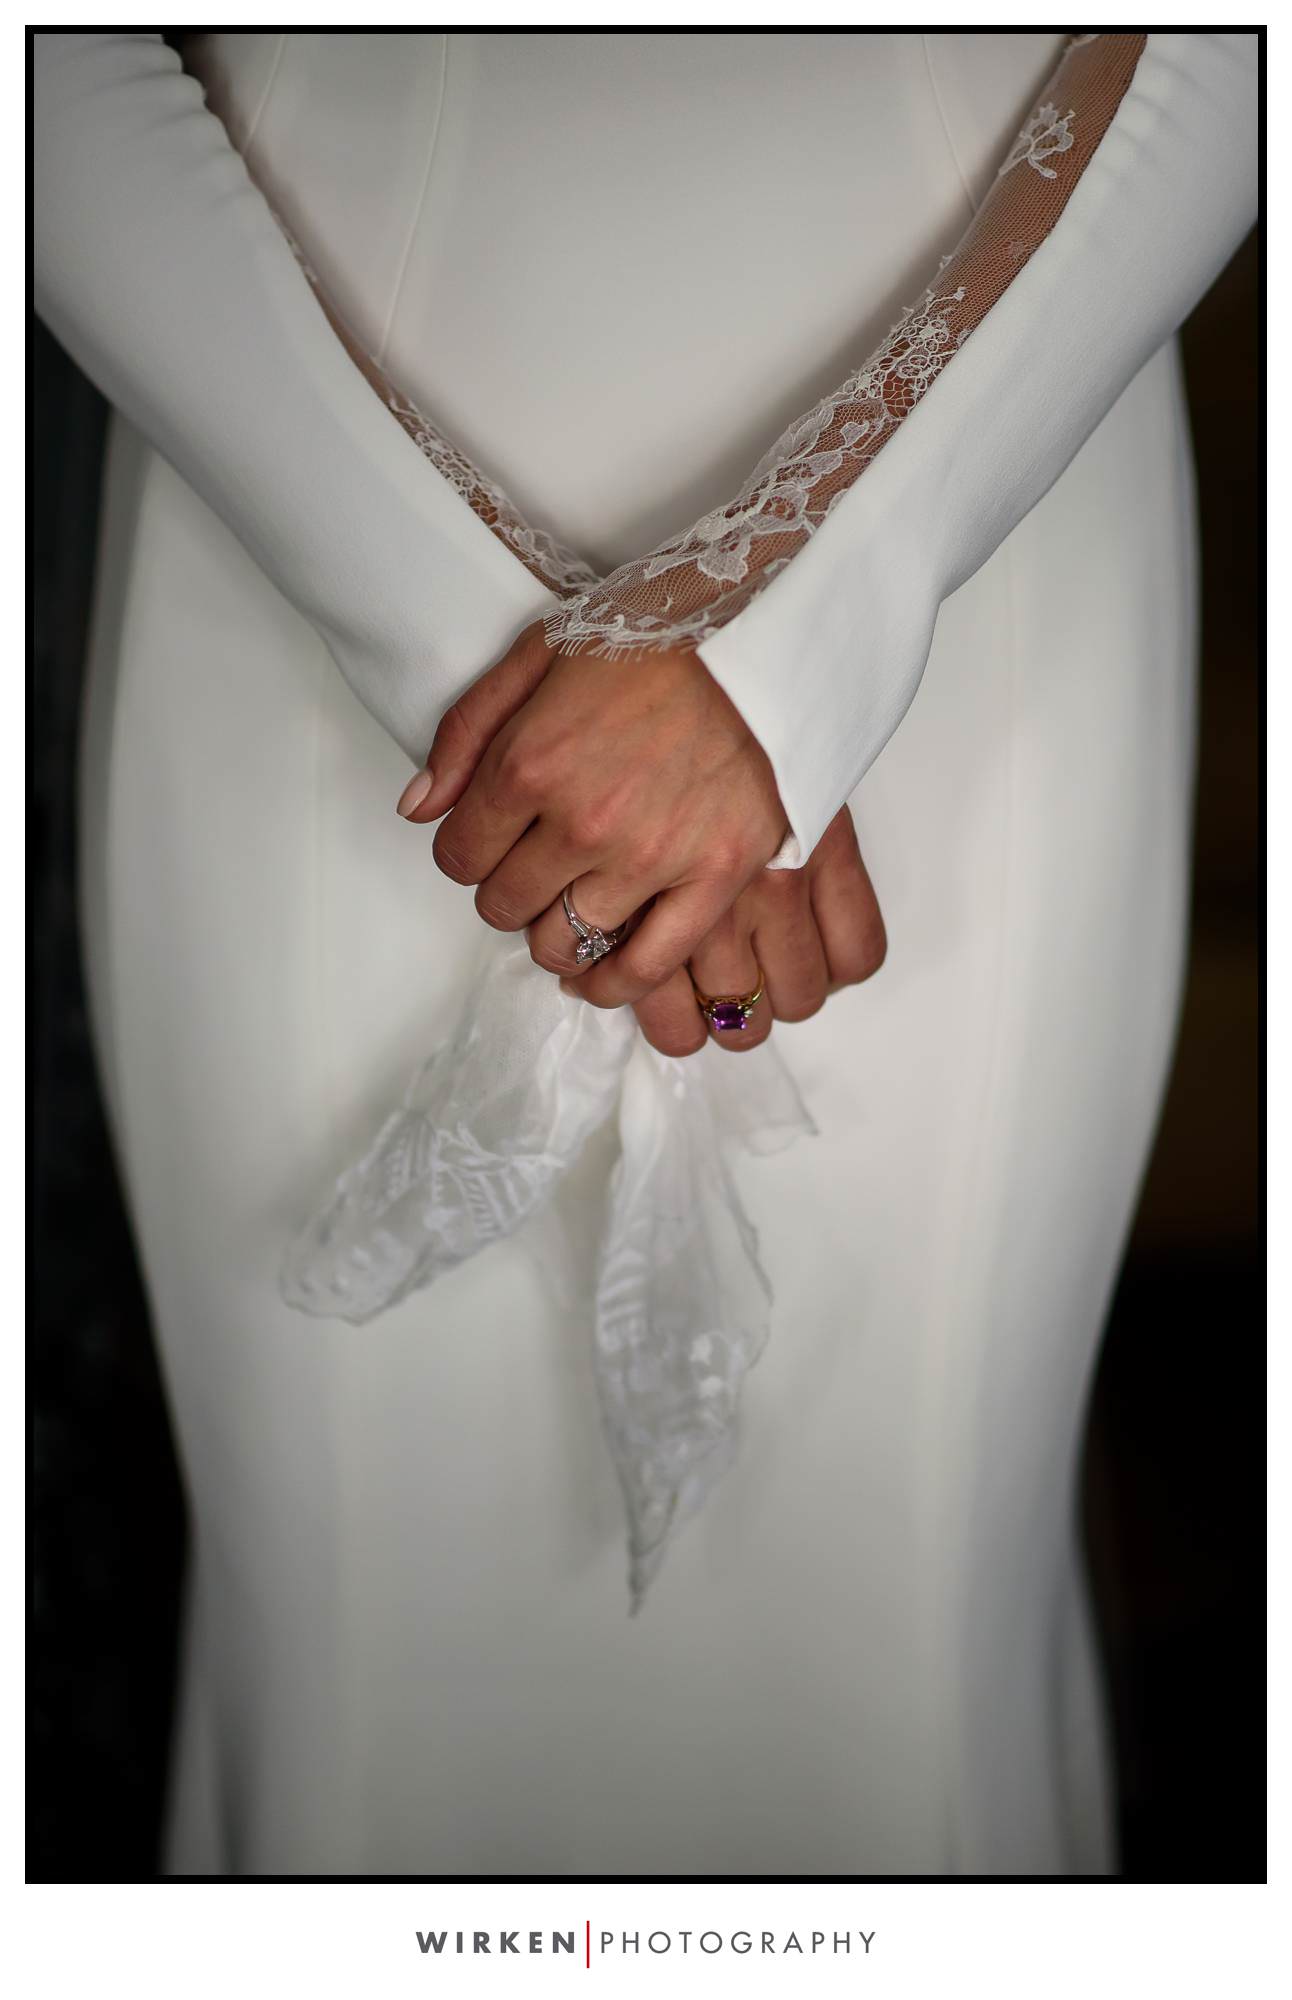 Trinidad, California Weddings. Bride in gownl